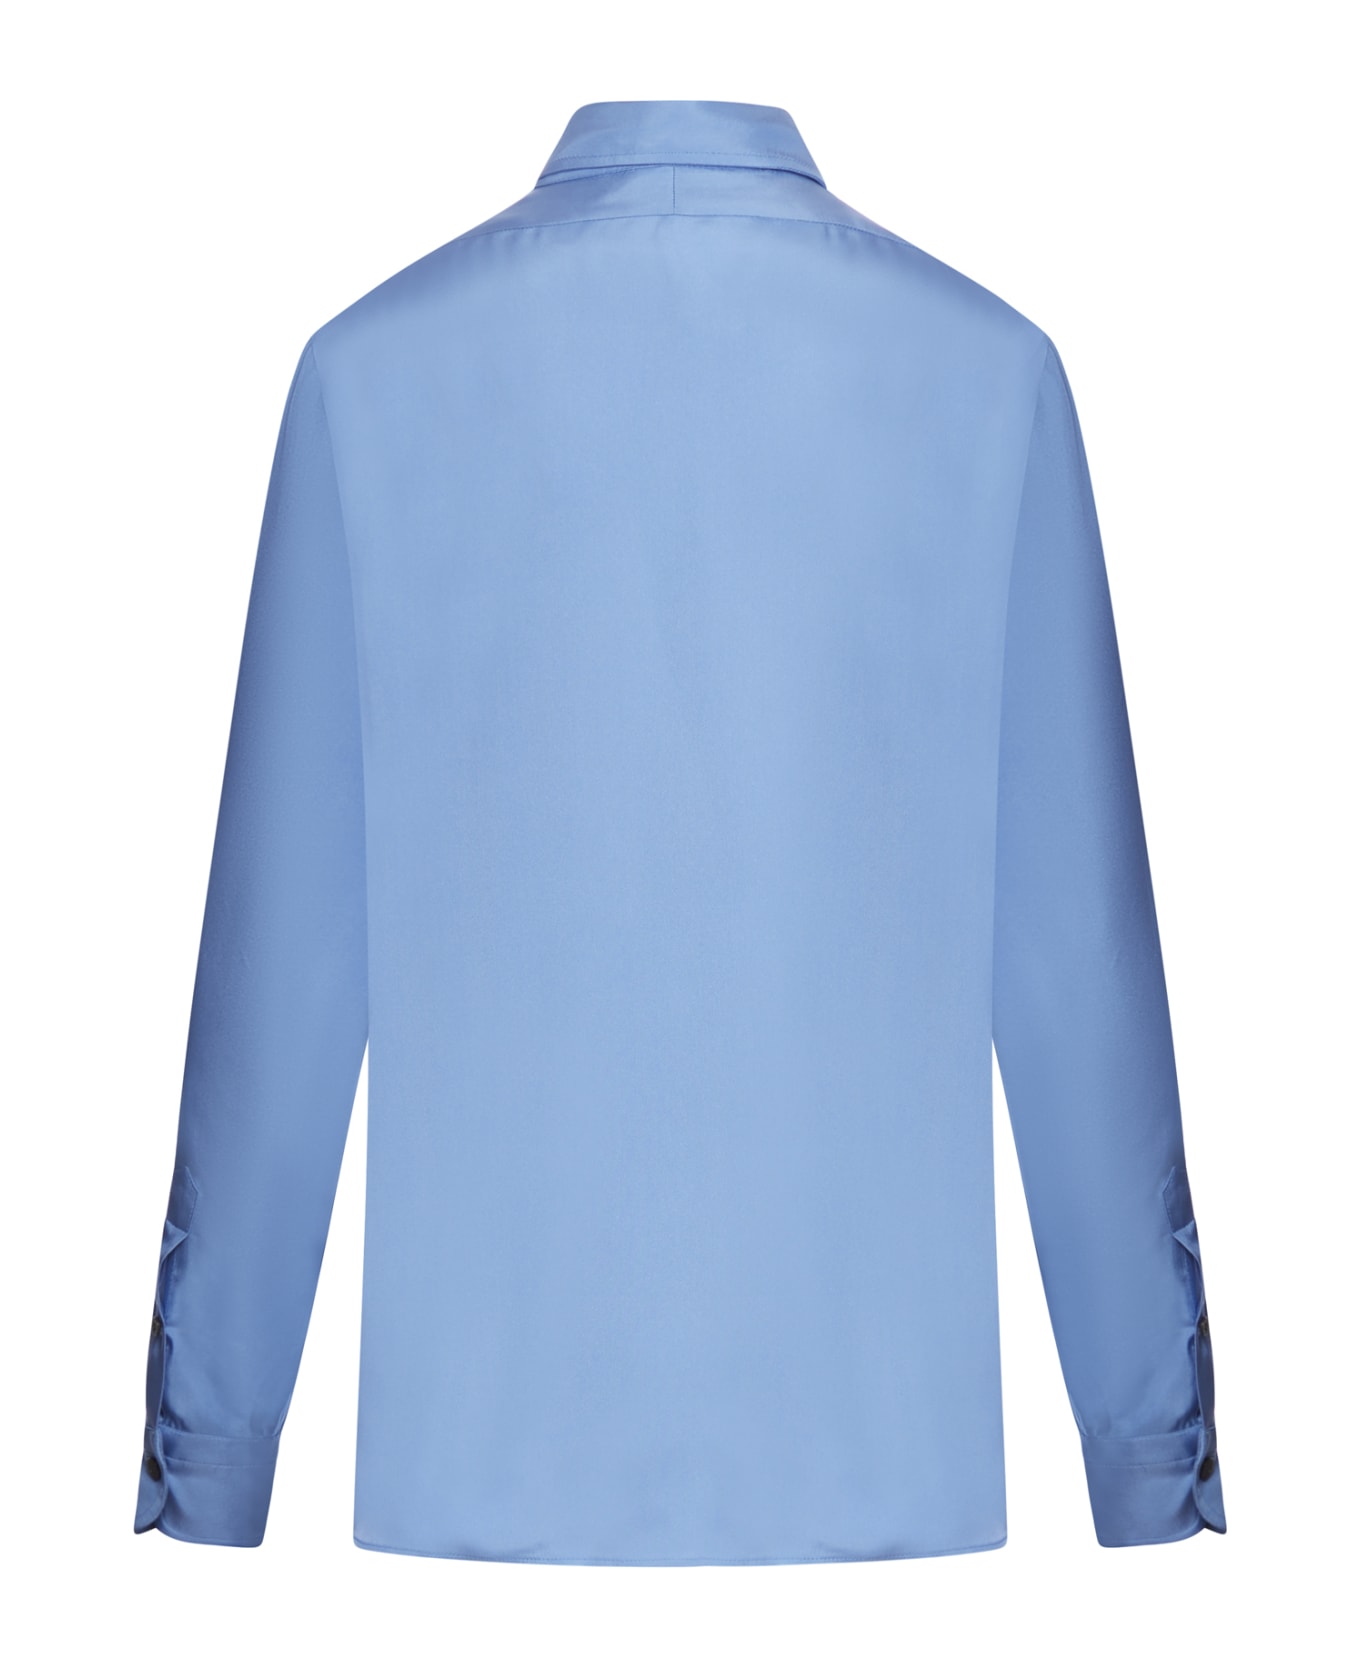 Tom Ford Fluid Viscose Silk Twill Shirt - Stone Blue シャツ